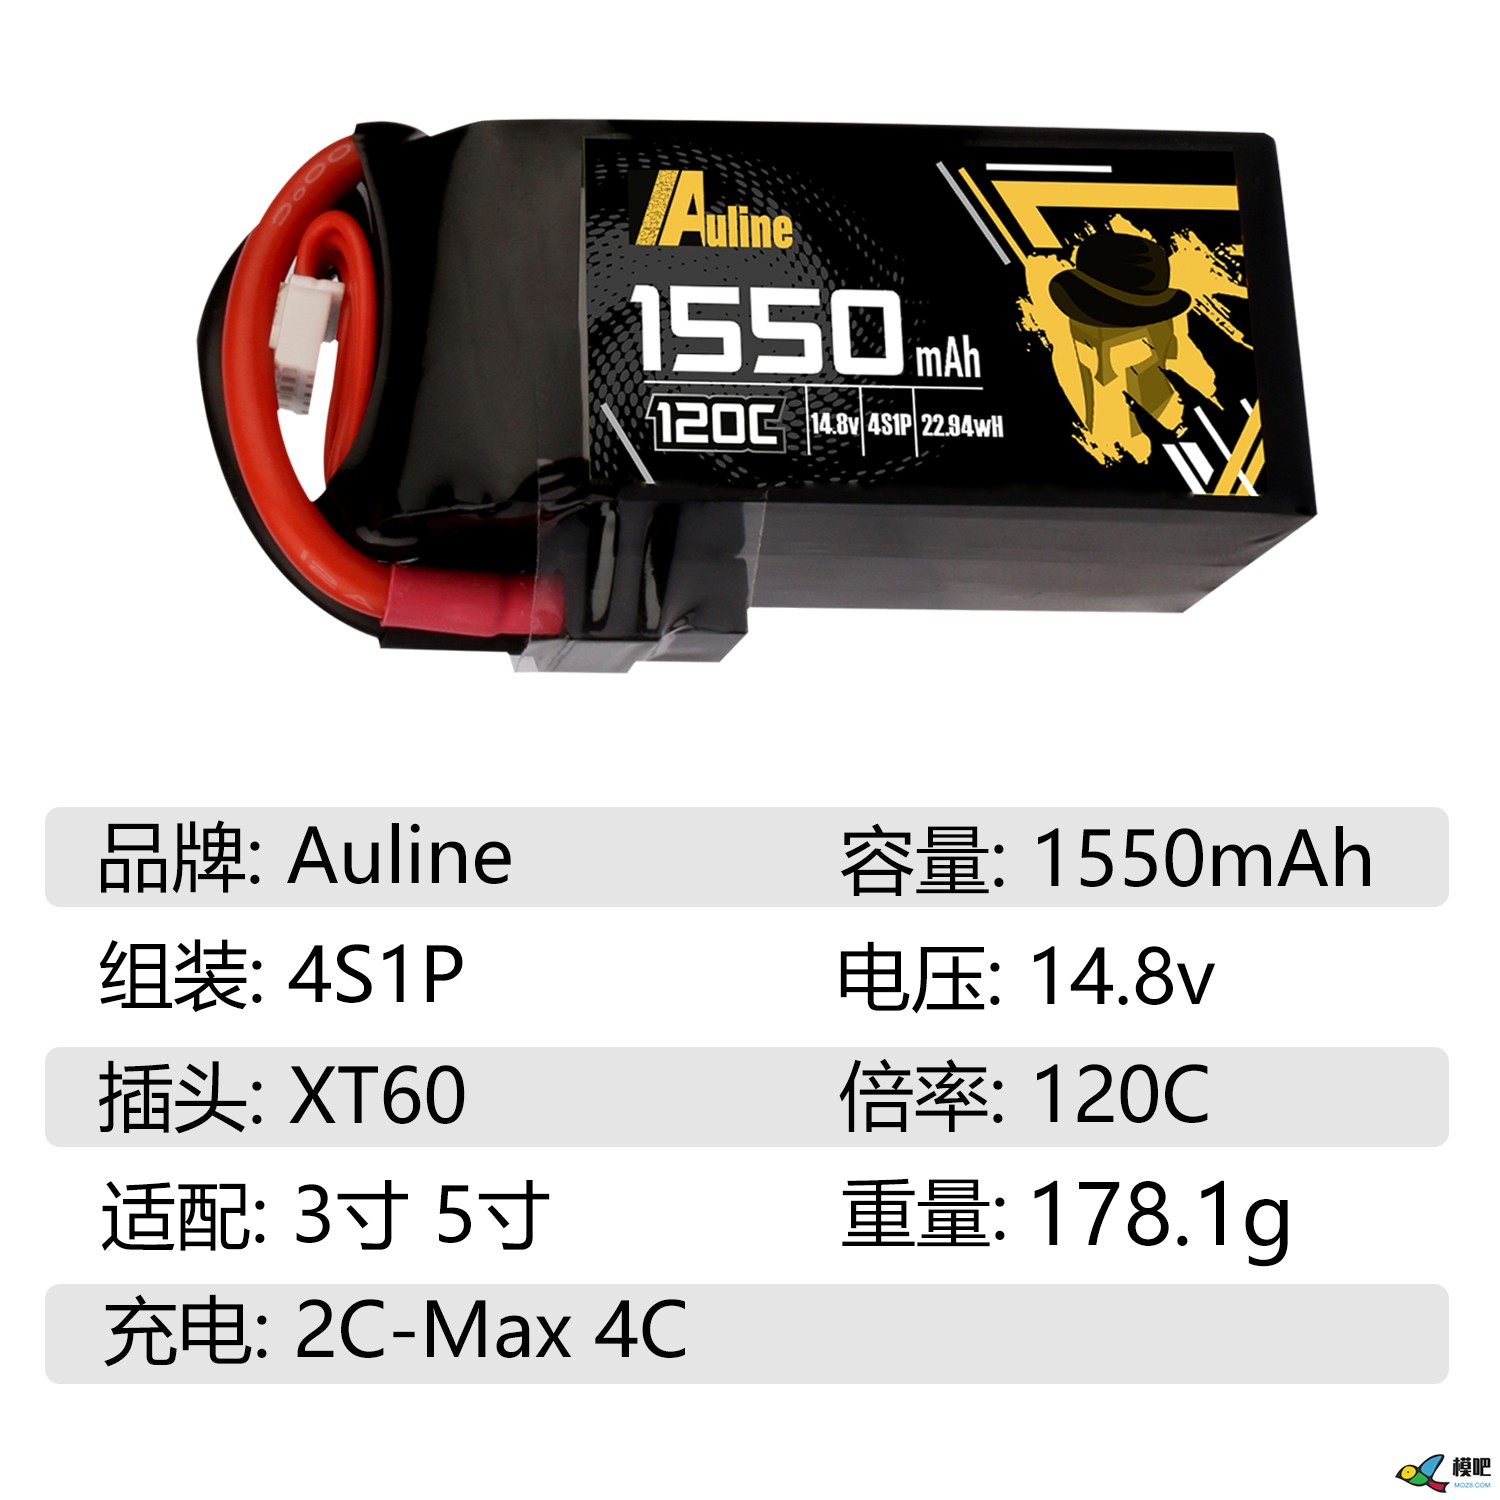 第七期测评活动：Auline品牌1550mAh高倍率锂电池测评邀请416 